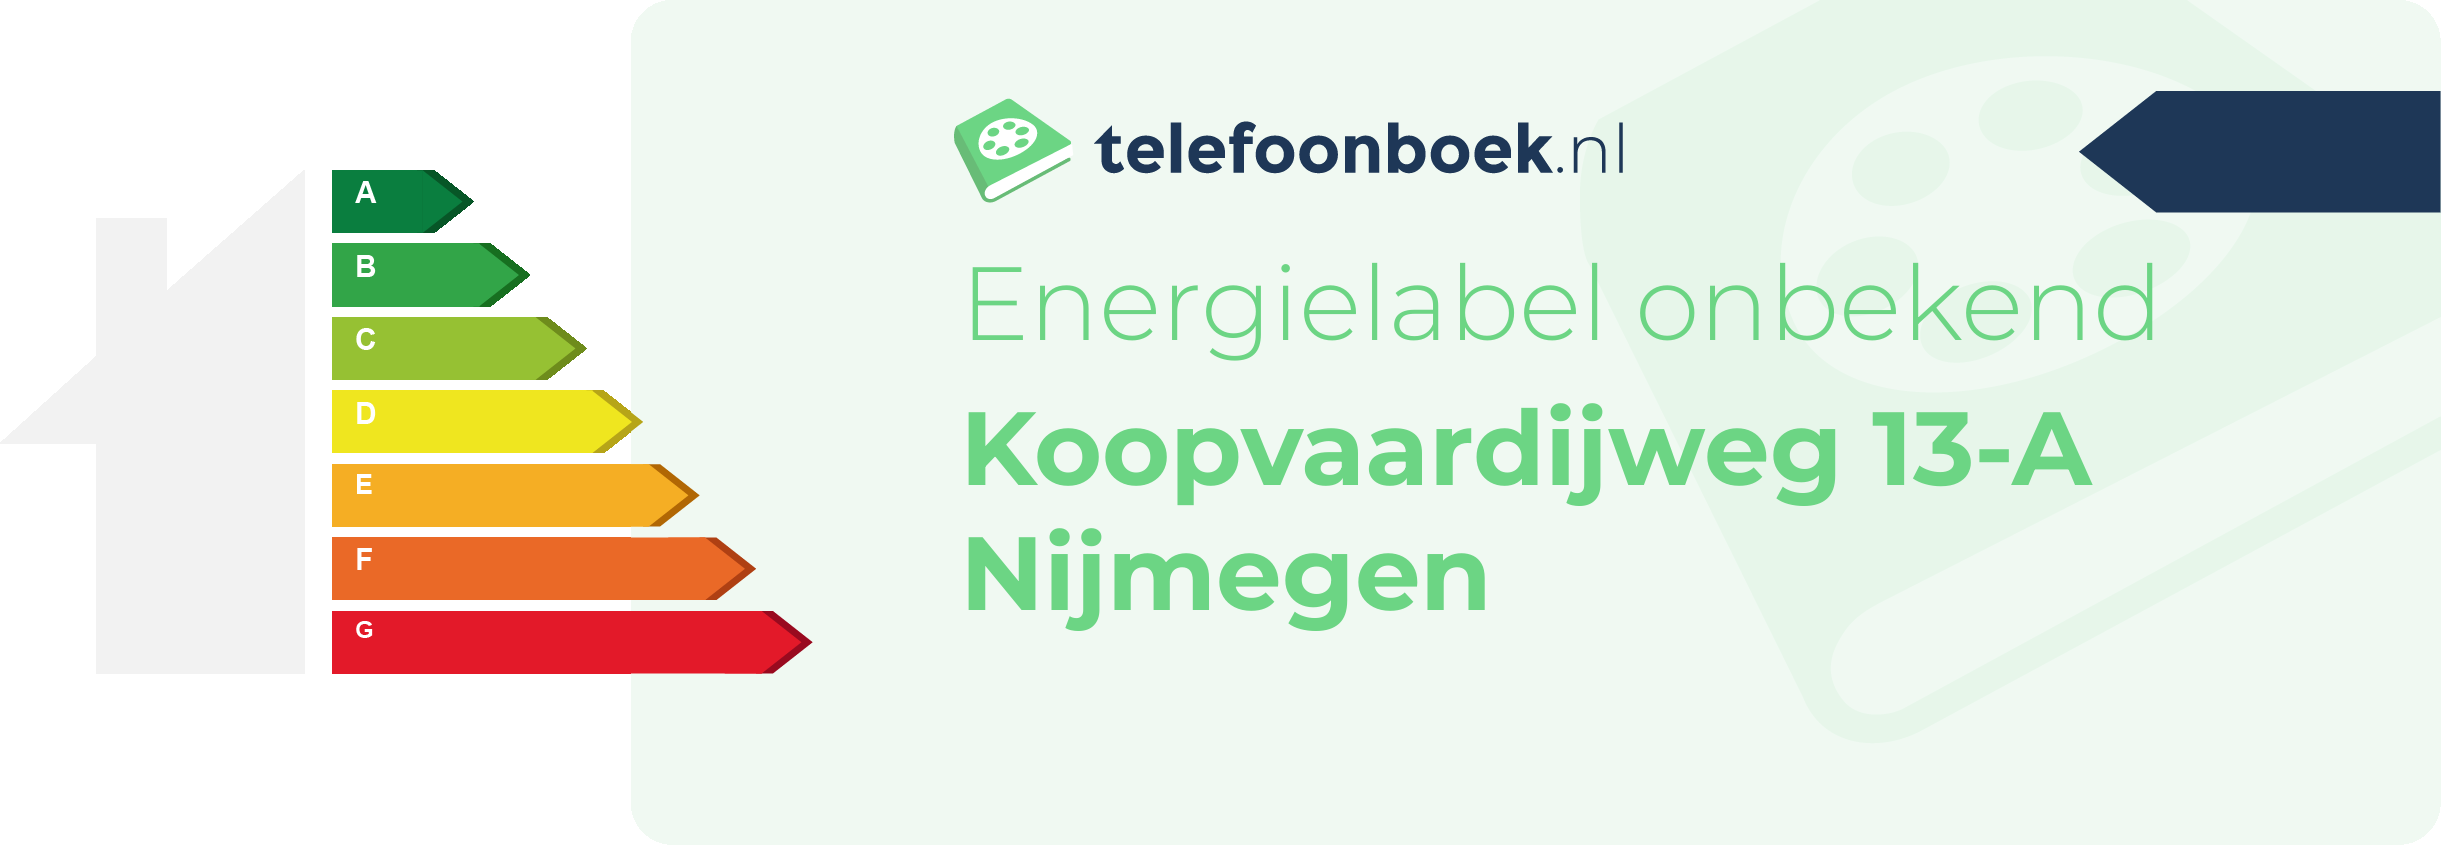 Energielabel Koopvaardijweg 13-A Nijmegen